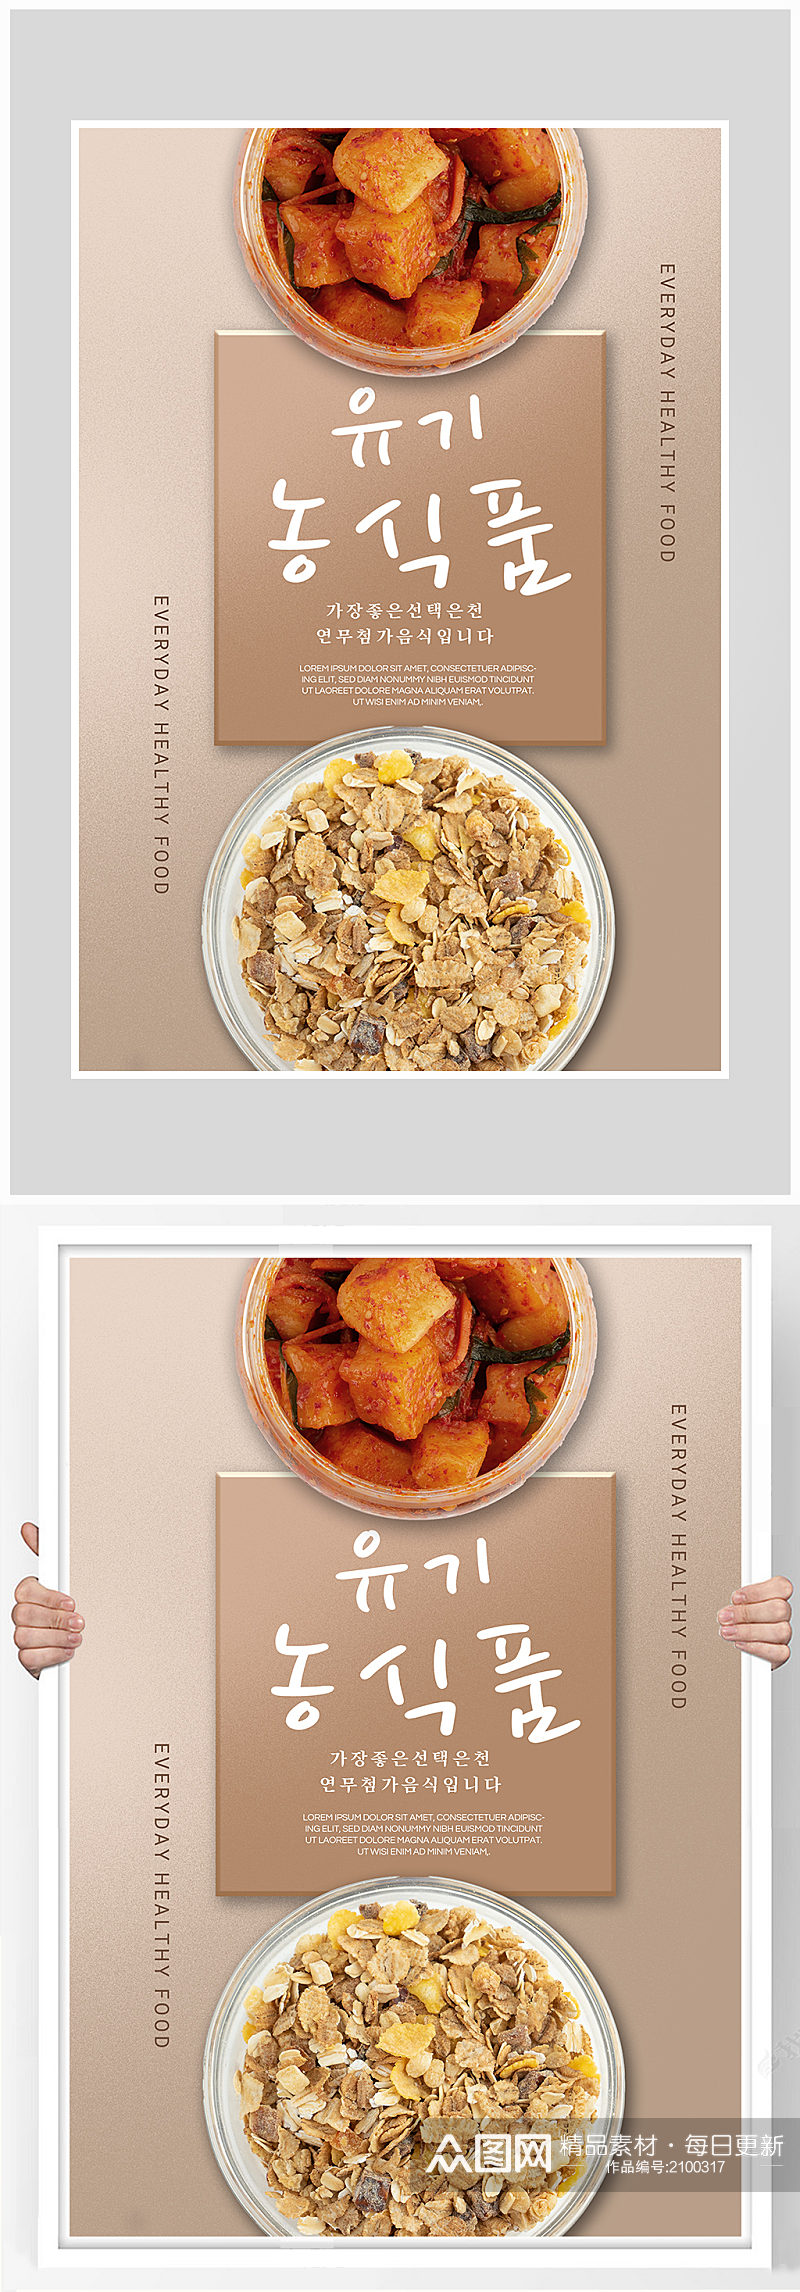 创意简约燕麦麦片早餐海报设计素材